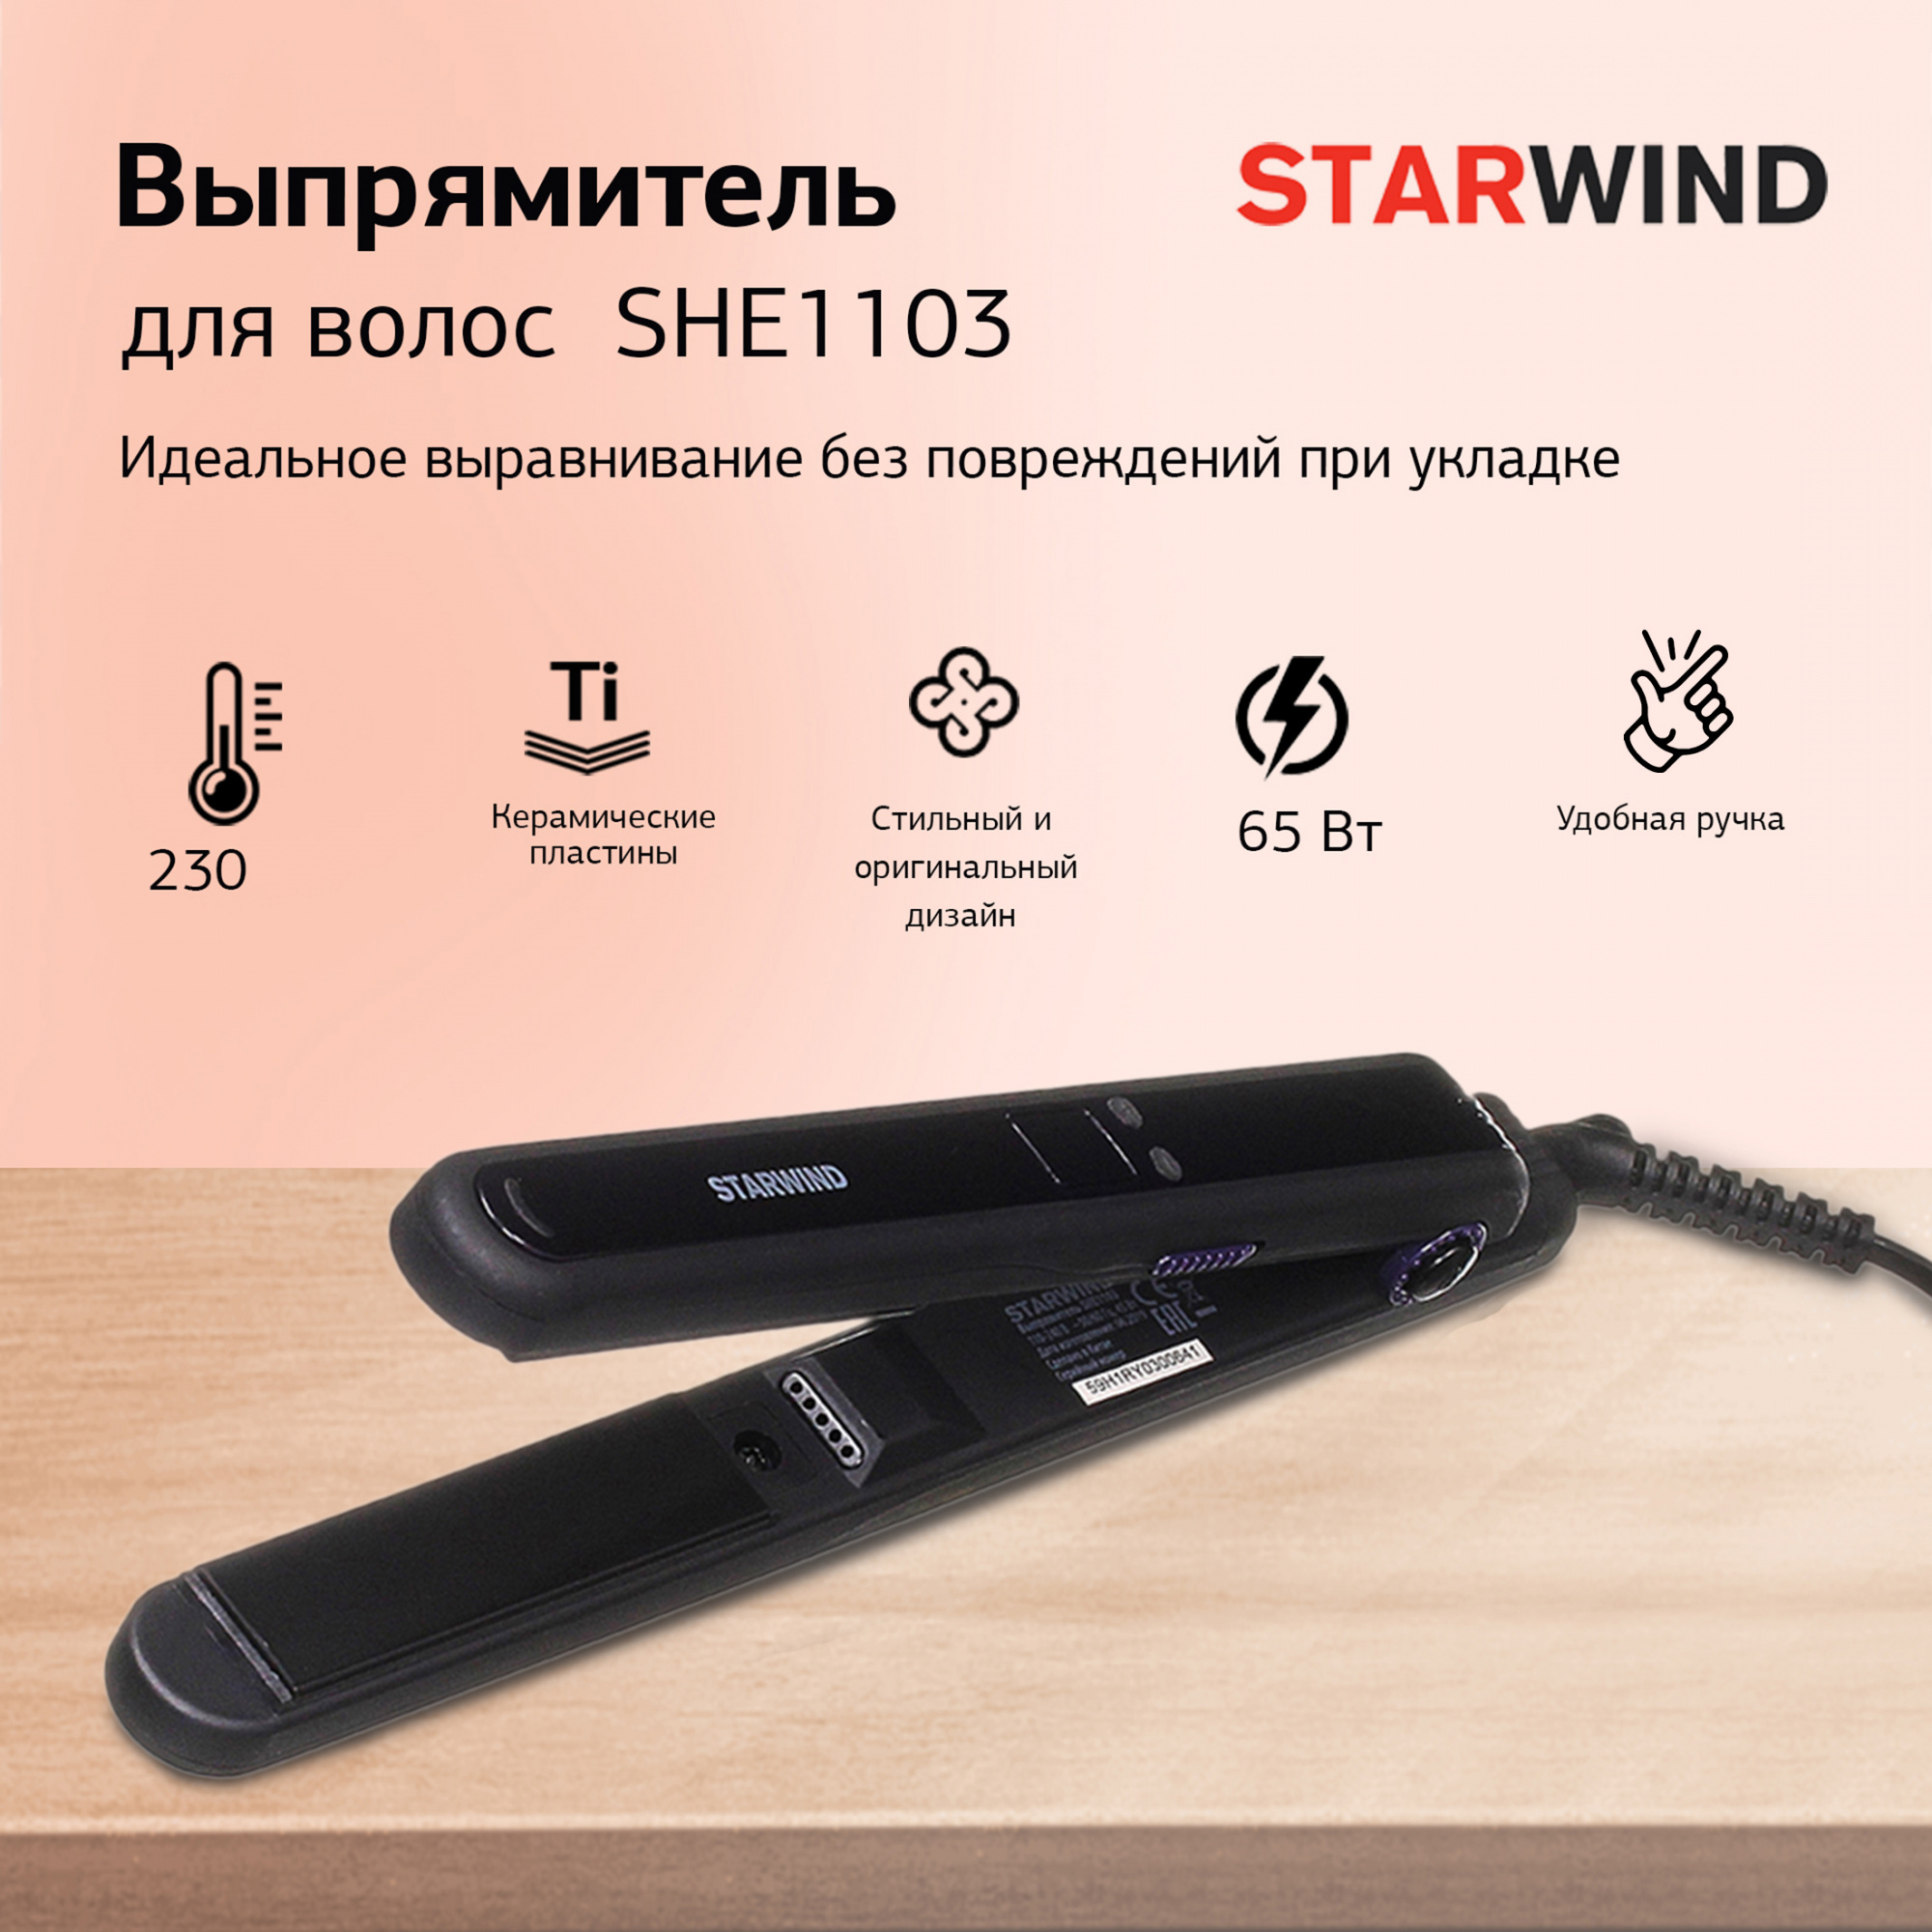 Выпрямитель Starwind SHE1103 черный/фиолетовый от магазина Старвинд